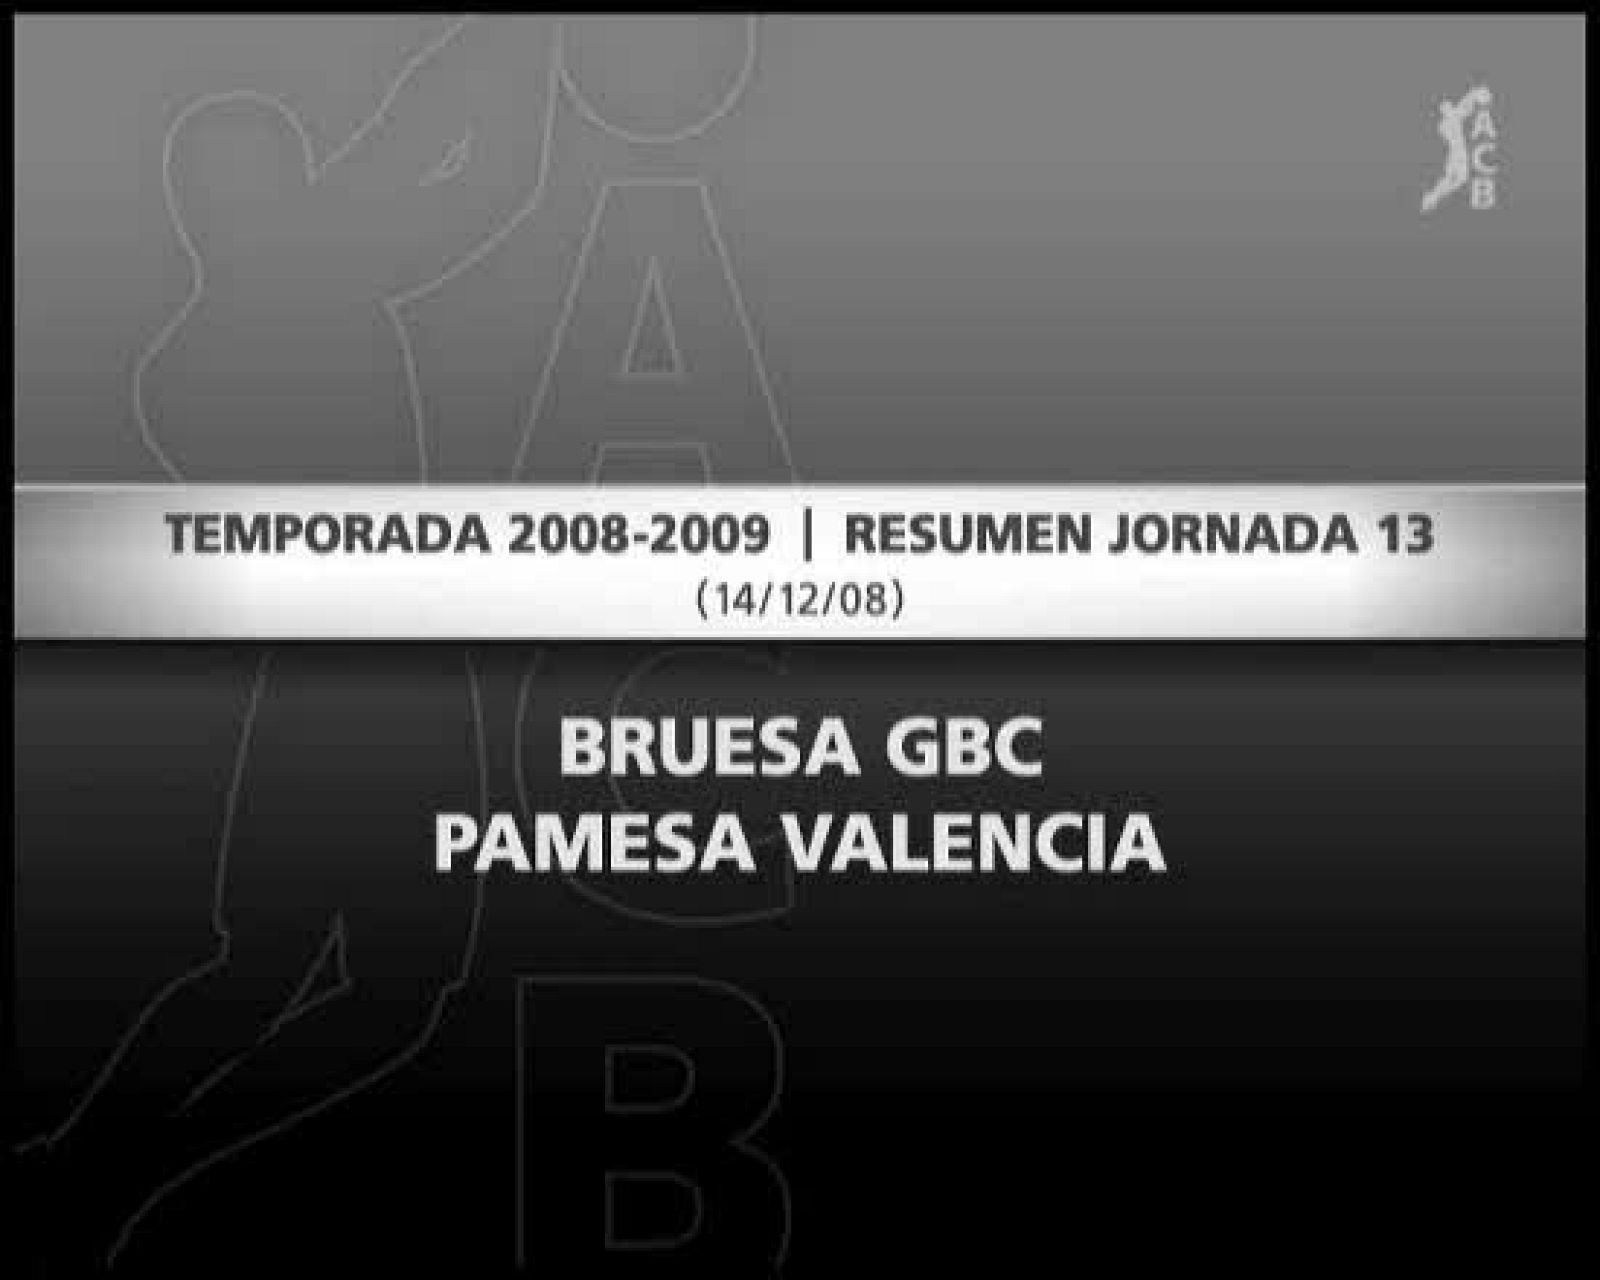 Bruesa GBC 70-65 Pamesa Valencia